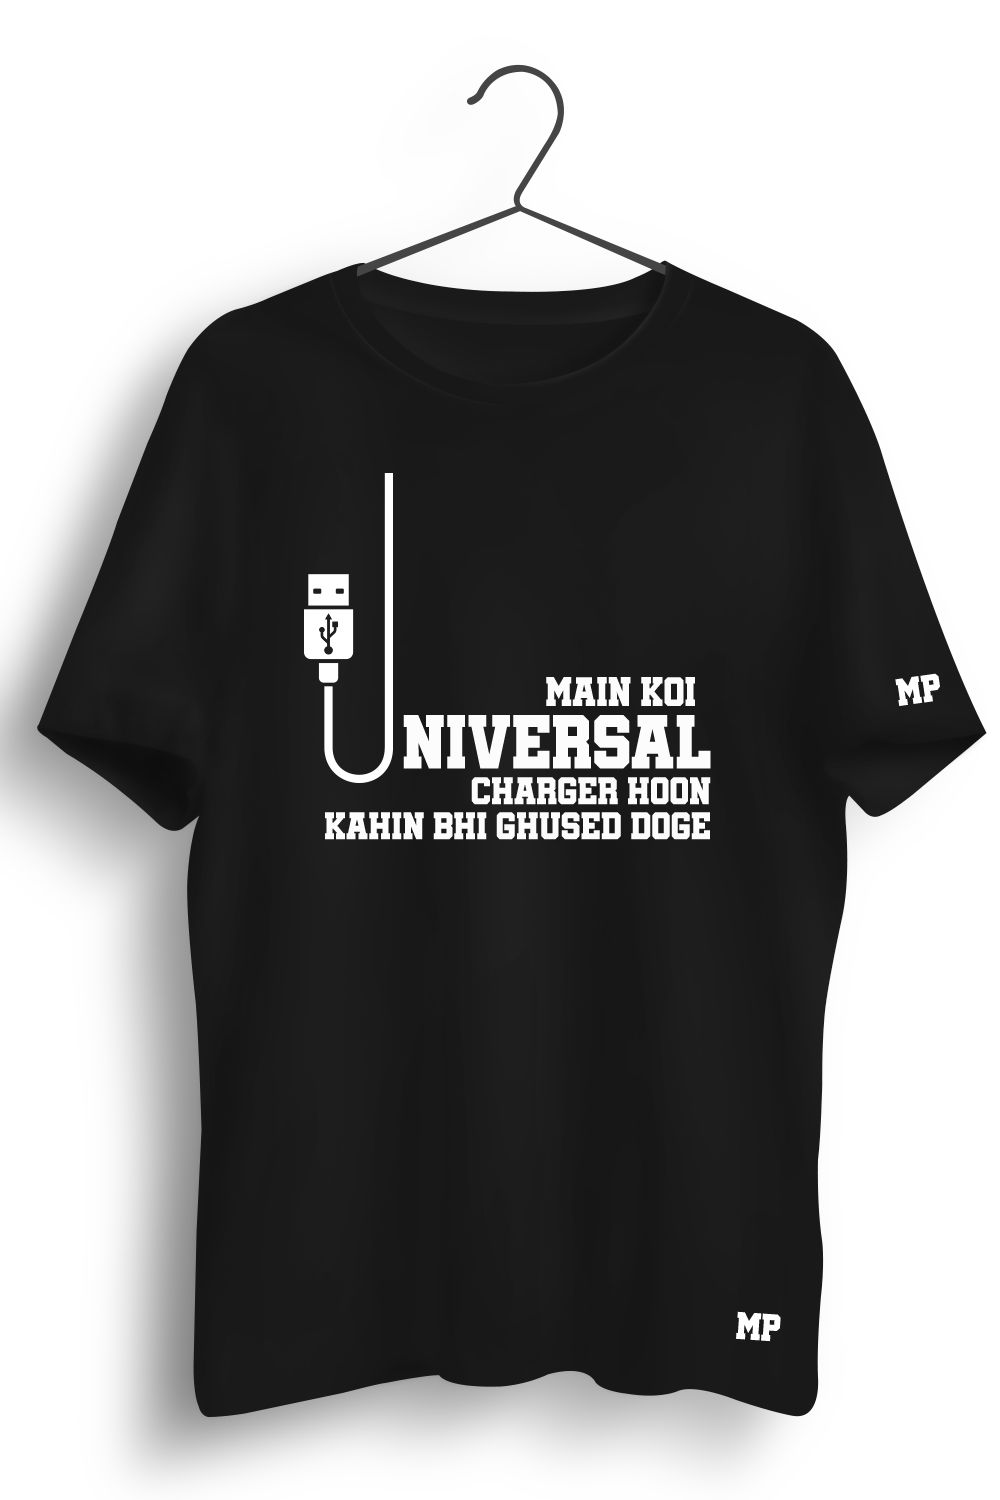 USB Graphic Printed Tshirt